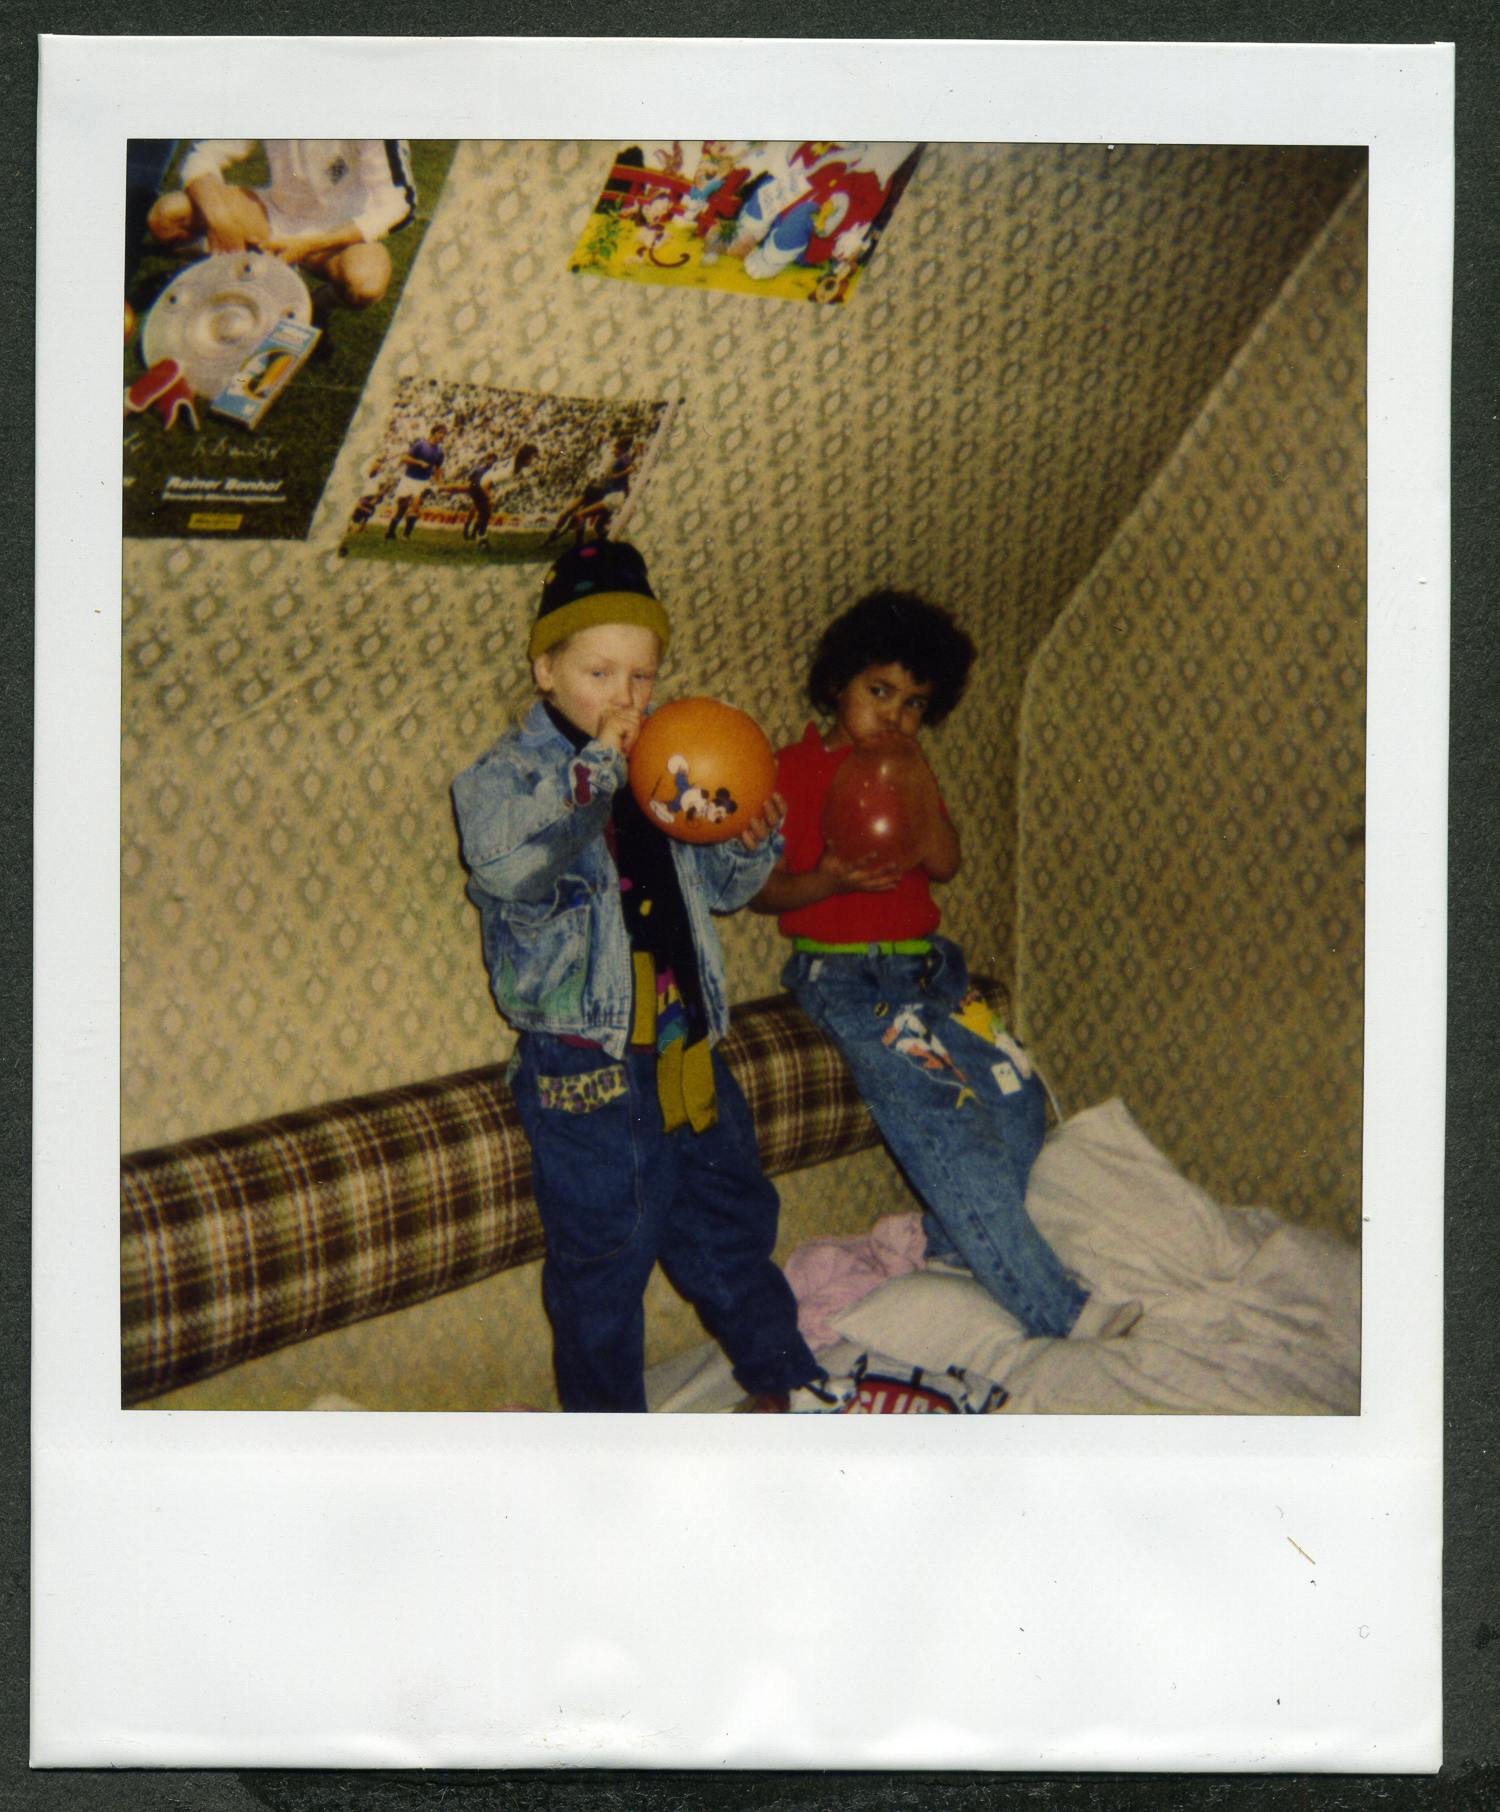 Wir sehen die Autorin in vermutlich ihrem Kinderzimmer im Alter von sieben Jahren. Neben ihr steht ein weißer Junge gleichen Alters und bläst einen orangenen Luftballon auf. 